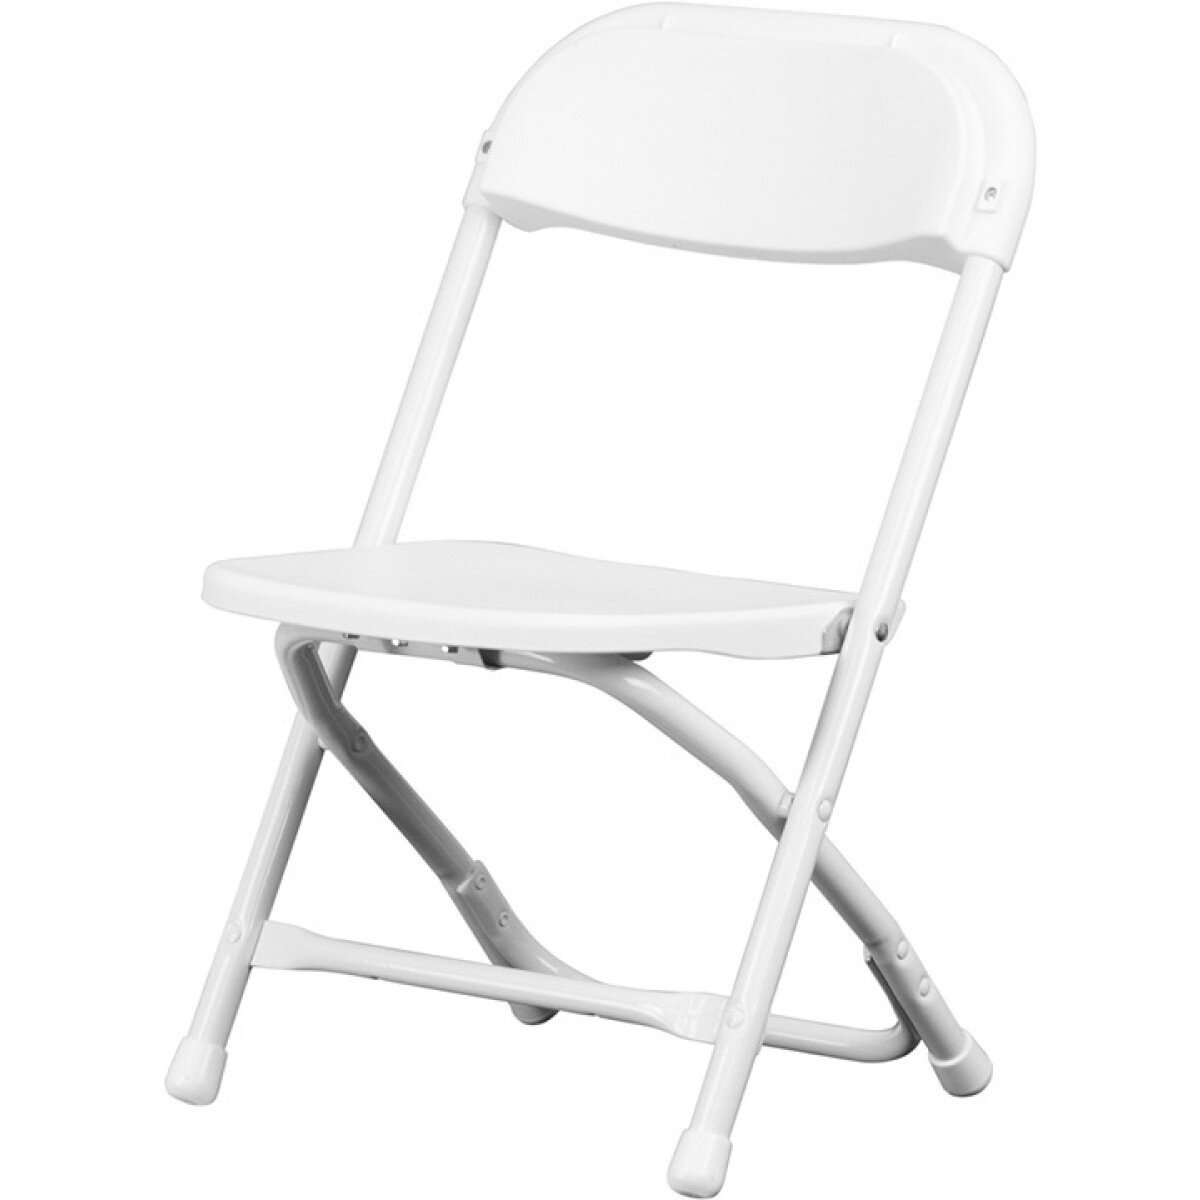 Kids Chair - White- $1.00